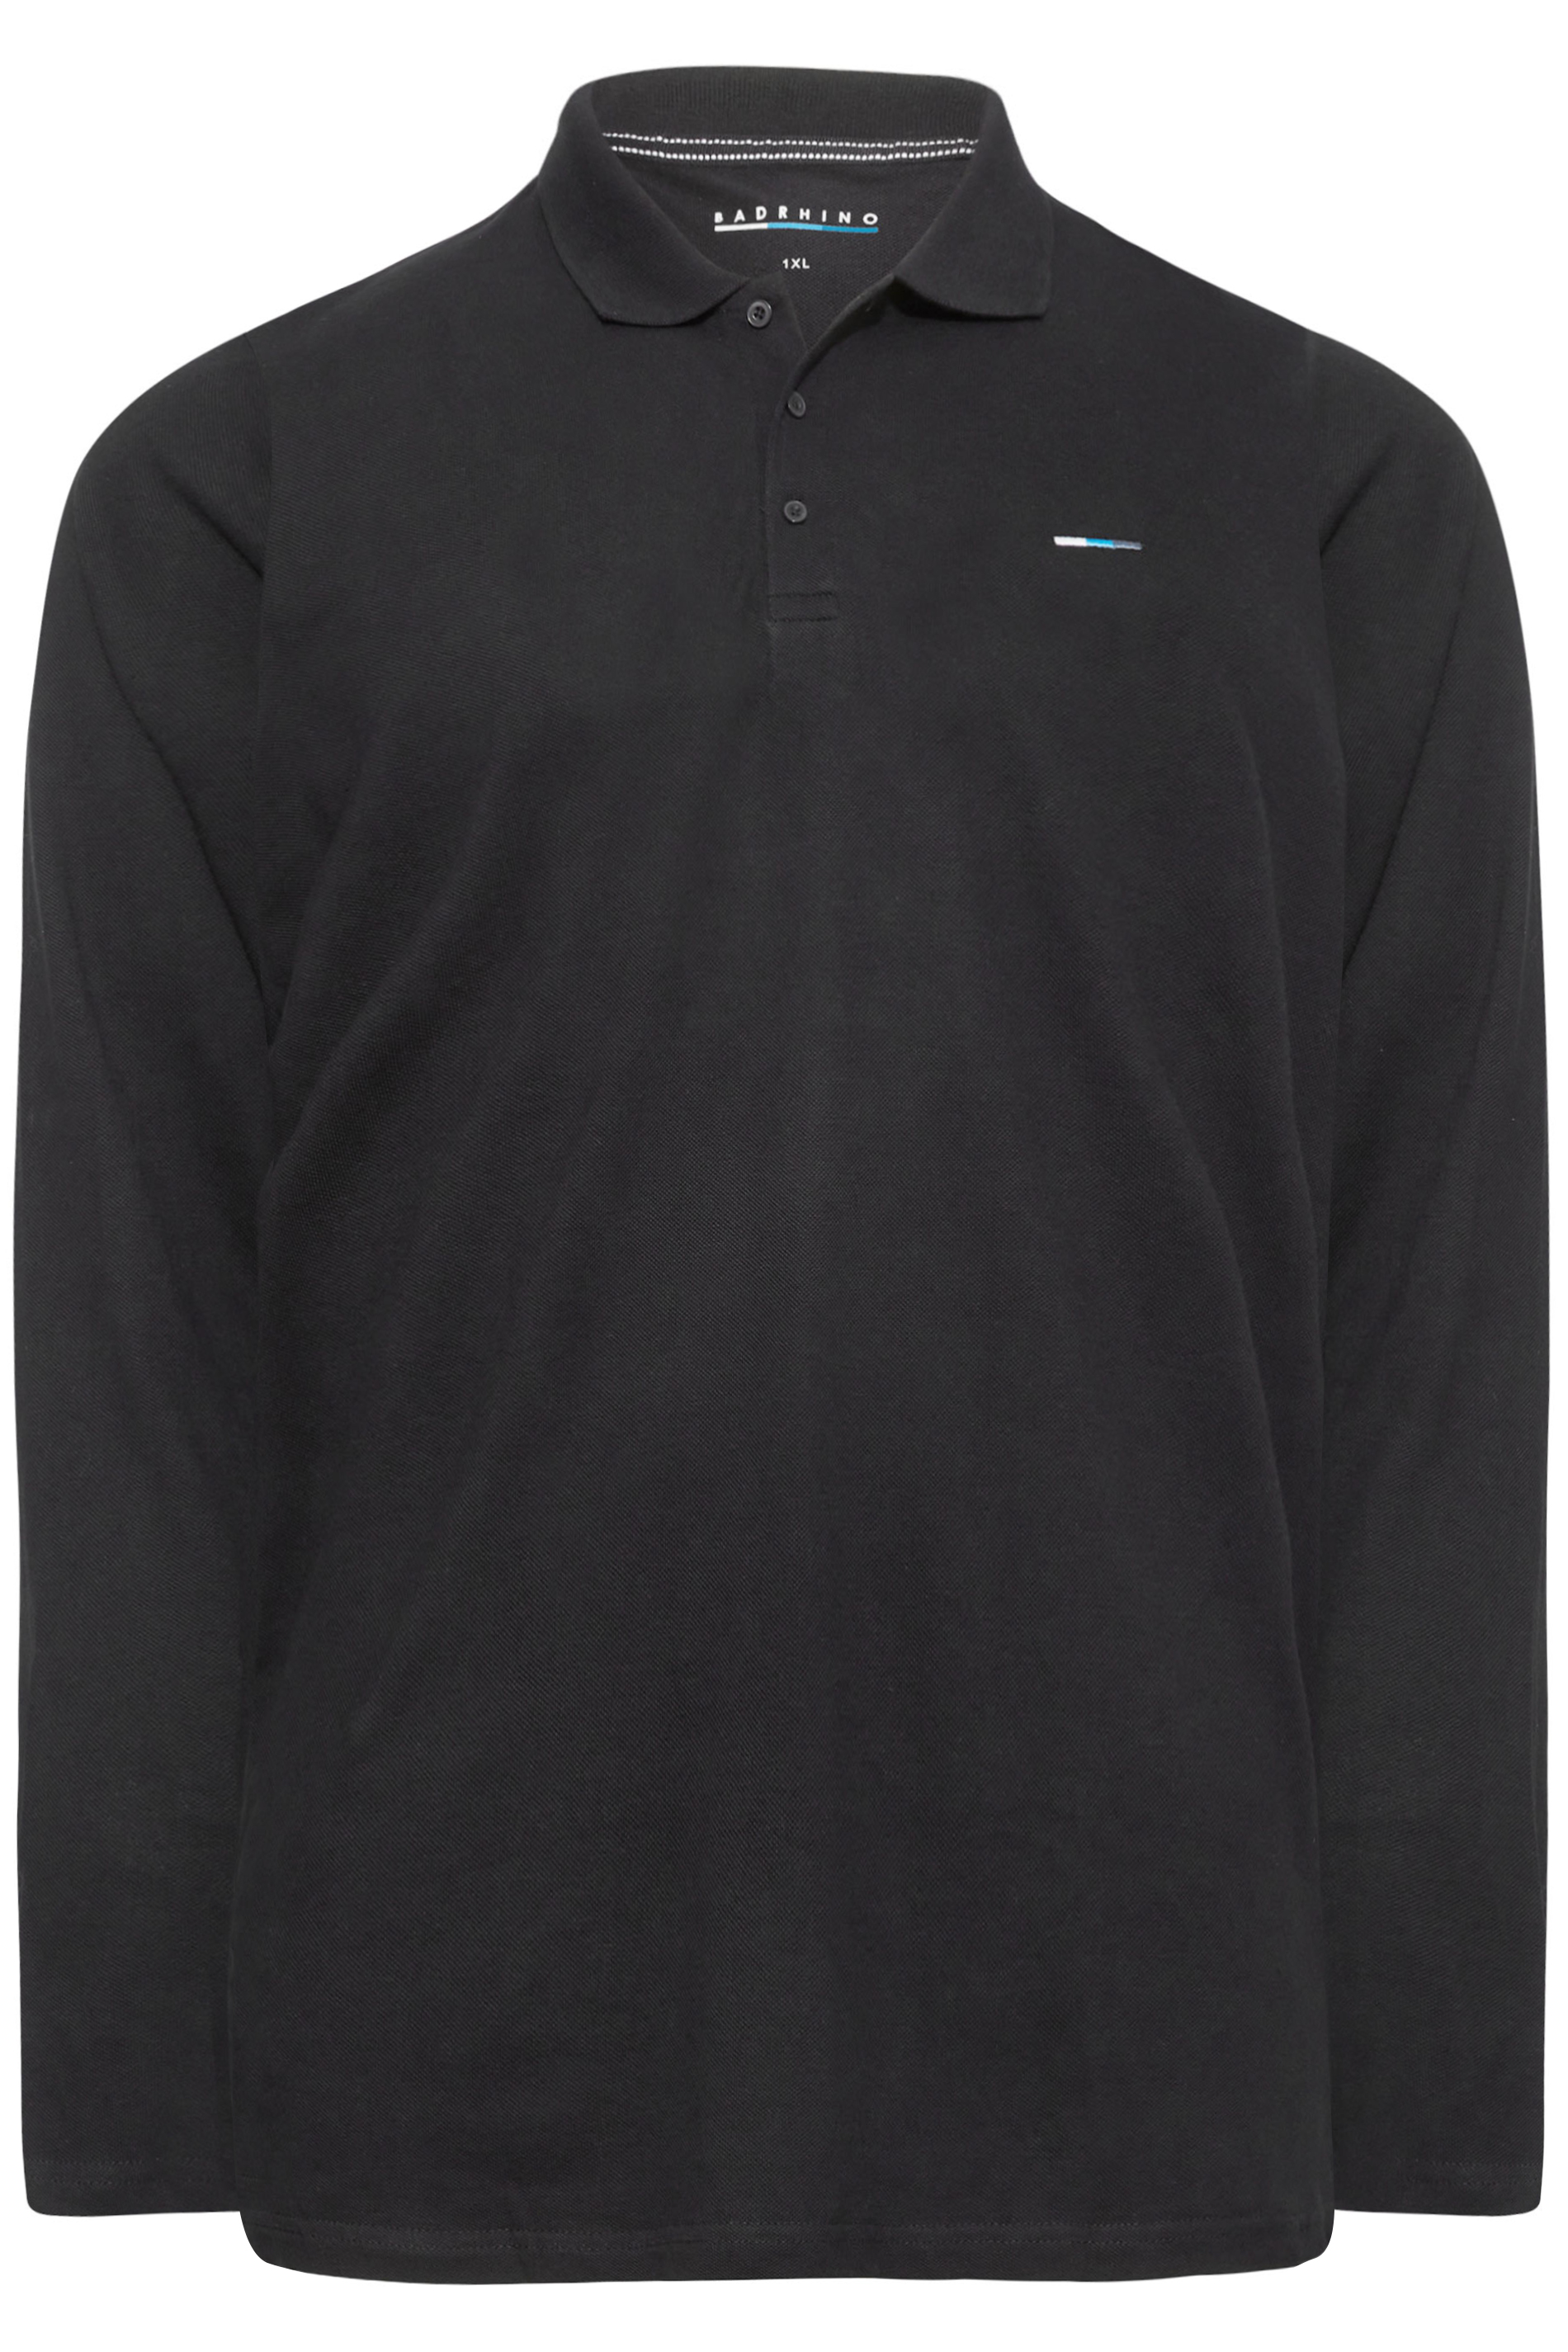 BadRhino Black Essential Long Sleeve Polo Shirt | BadRhino 3